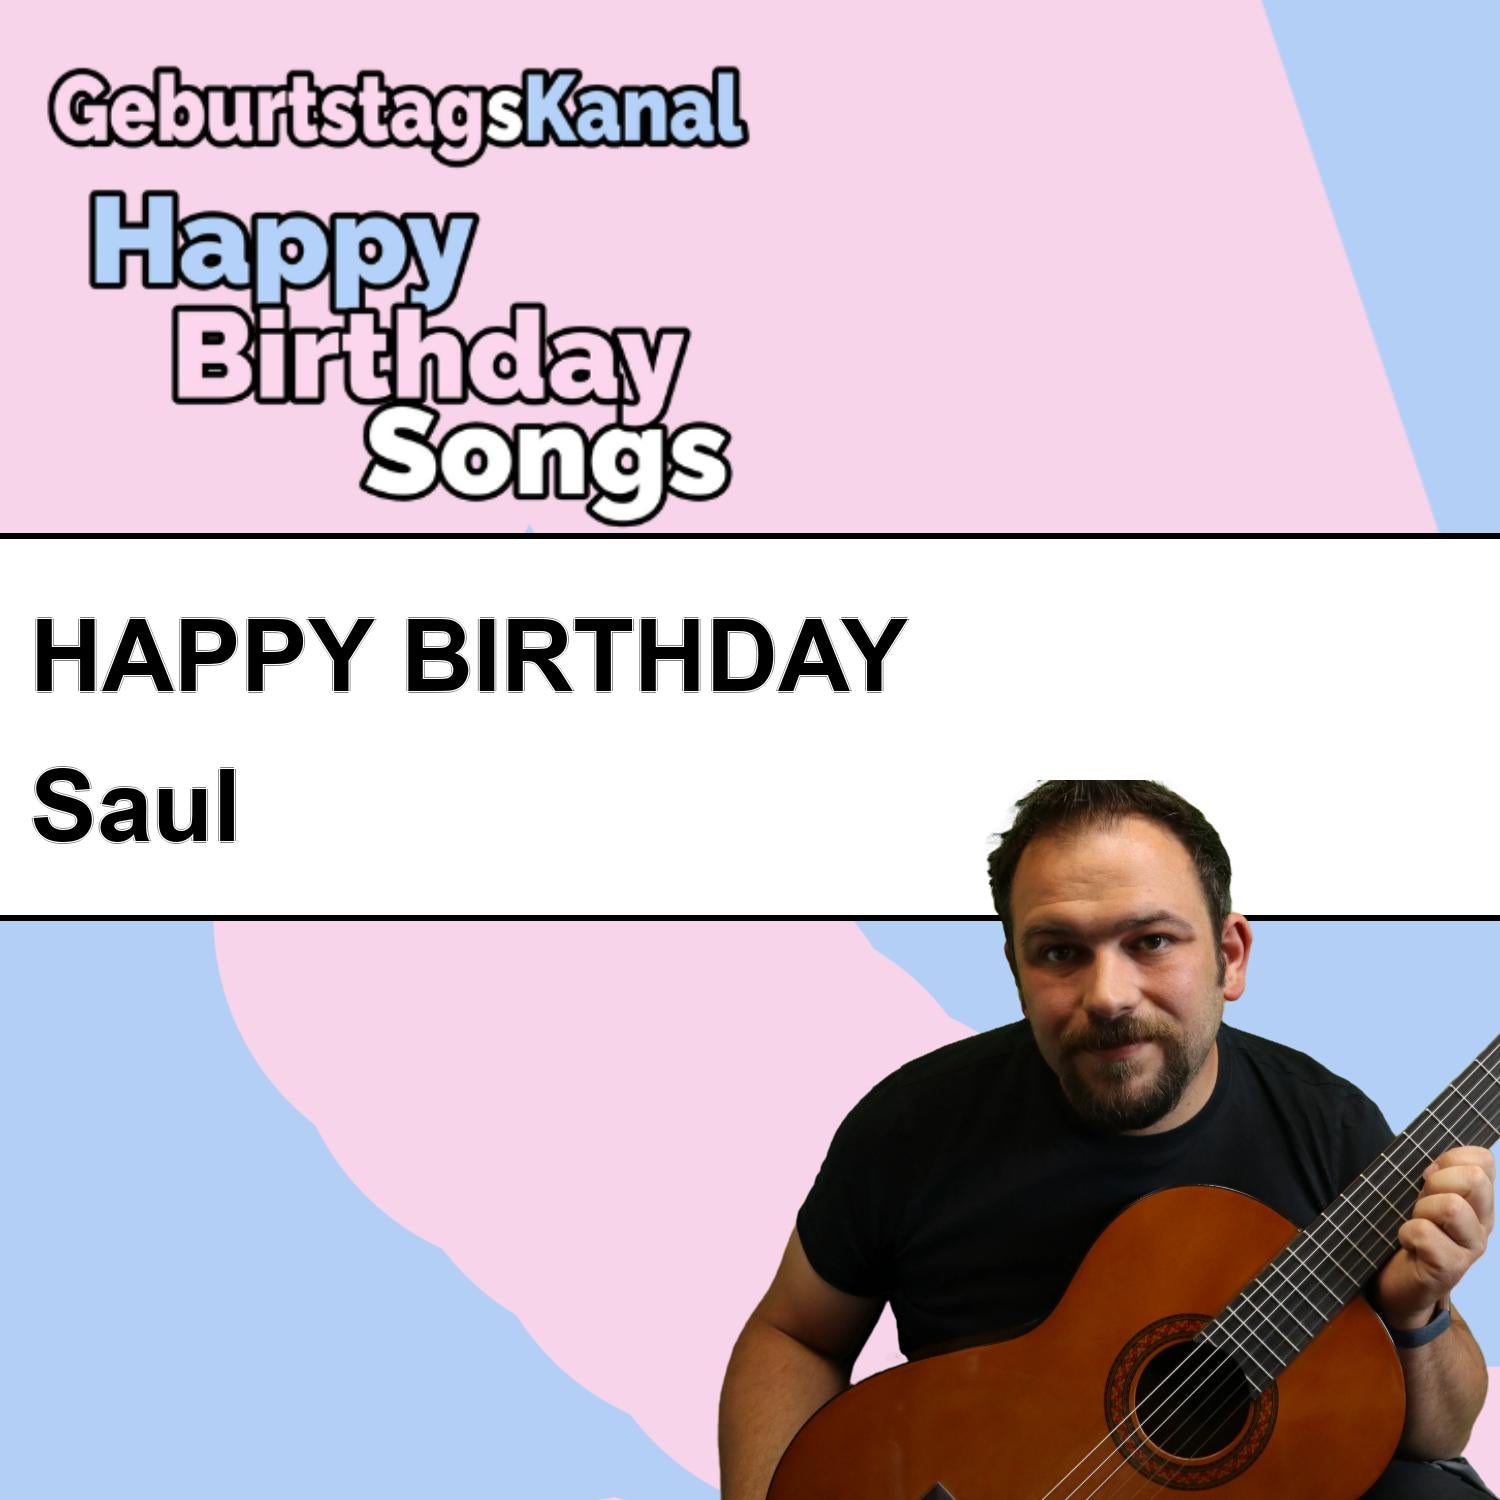 Produktbild Happy Birthday to you Saul mit Wunschgrußbotschaft